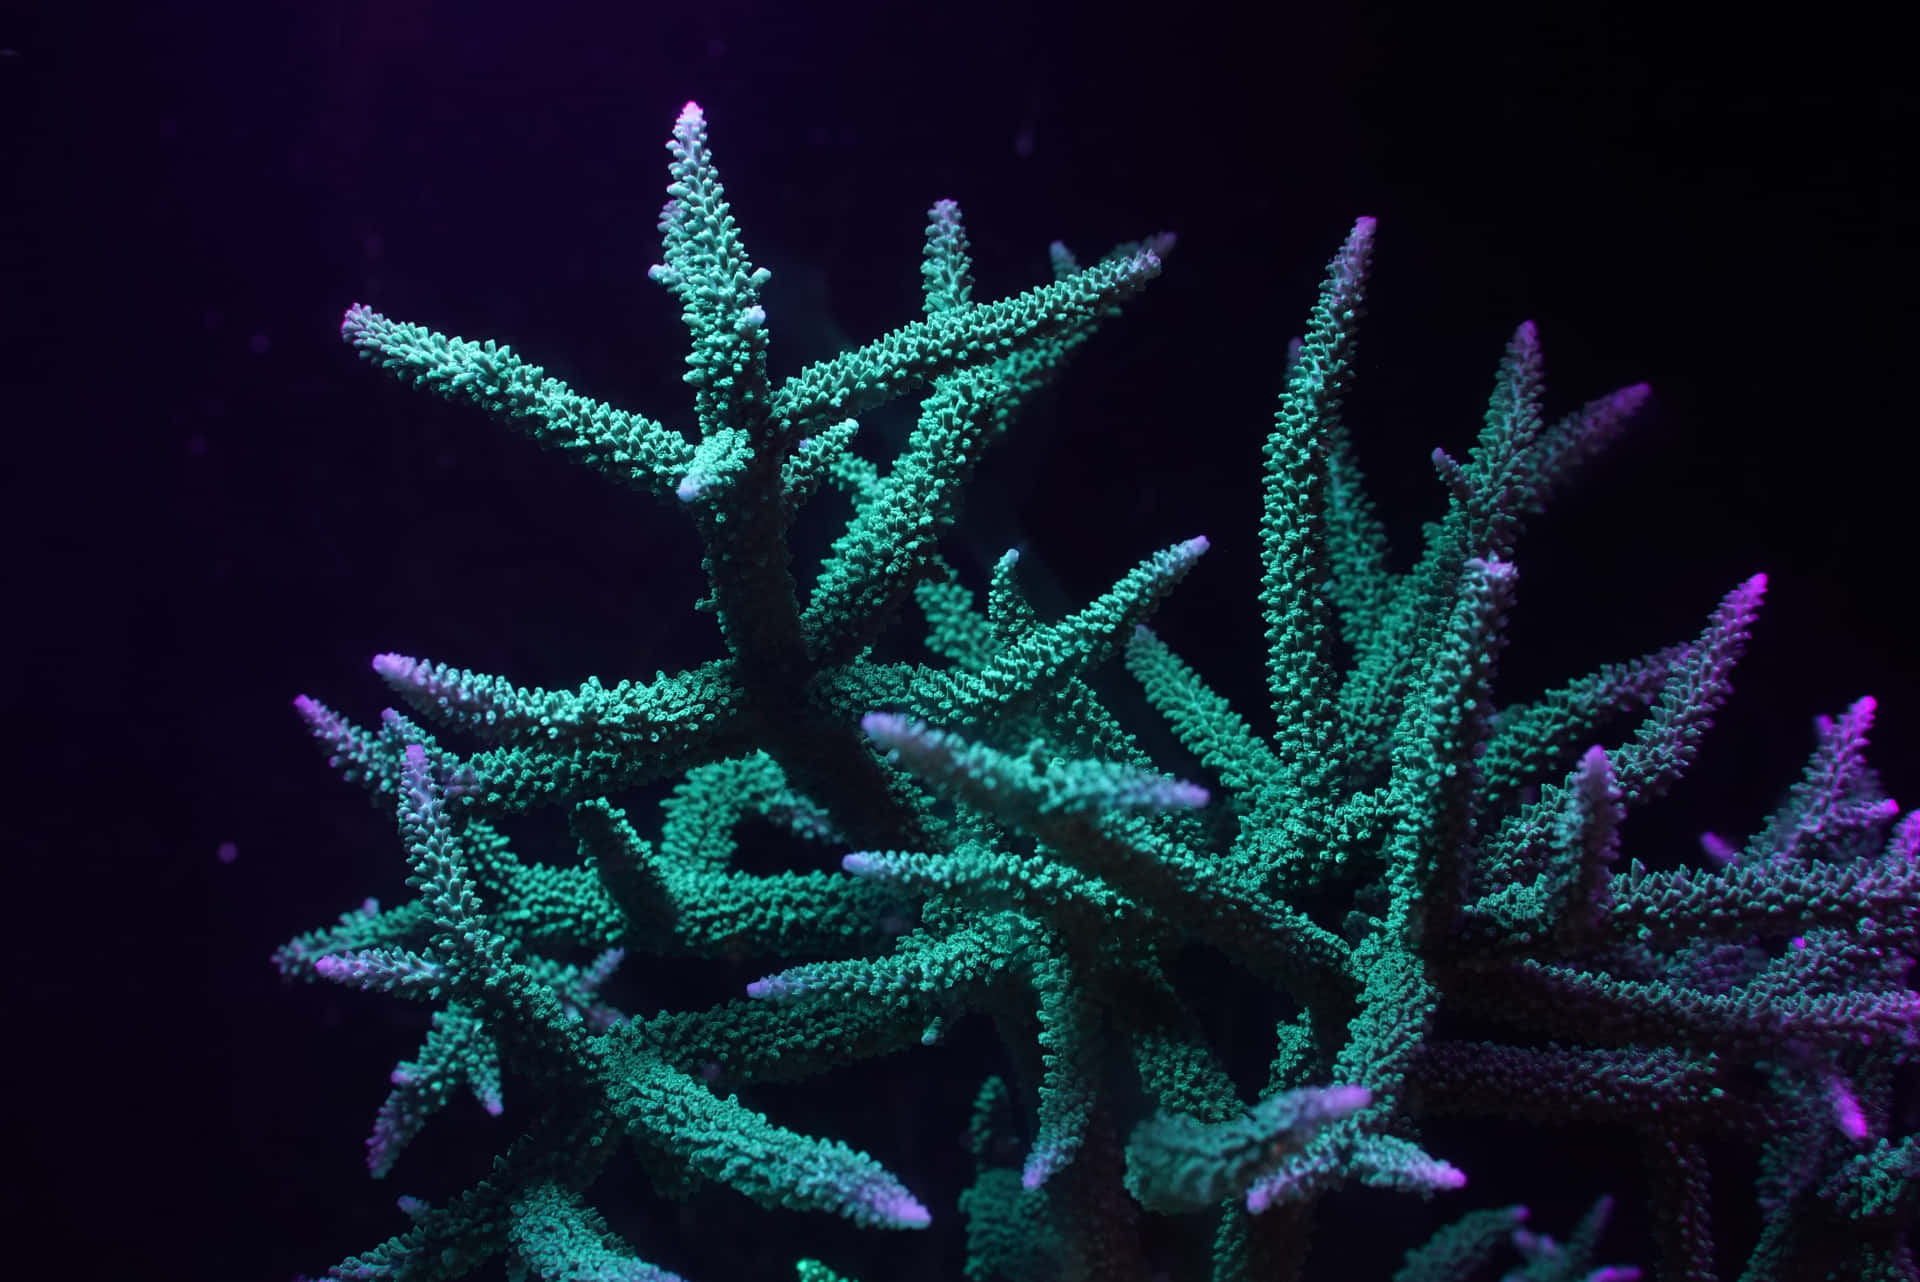 Glowing Staghorn Coralin Deep Blue Water Wallpaper